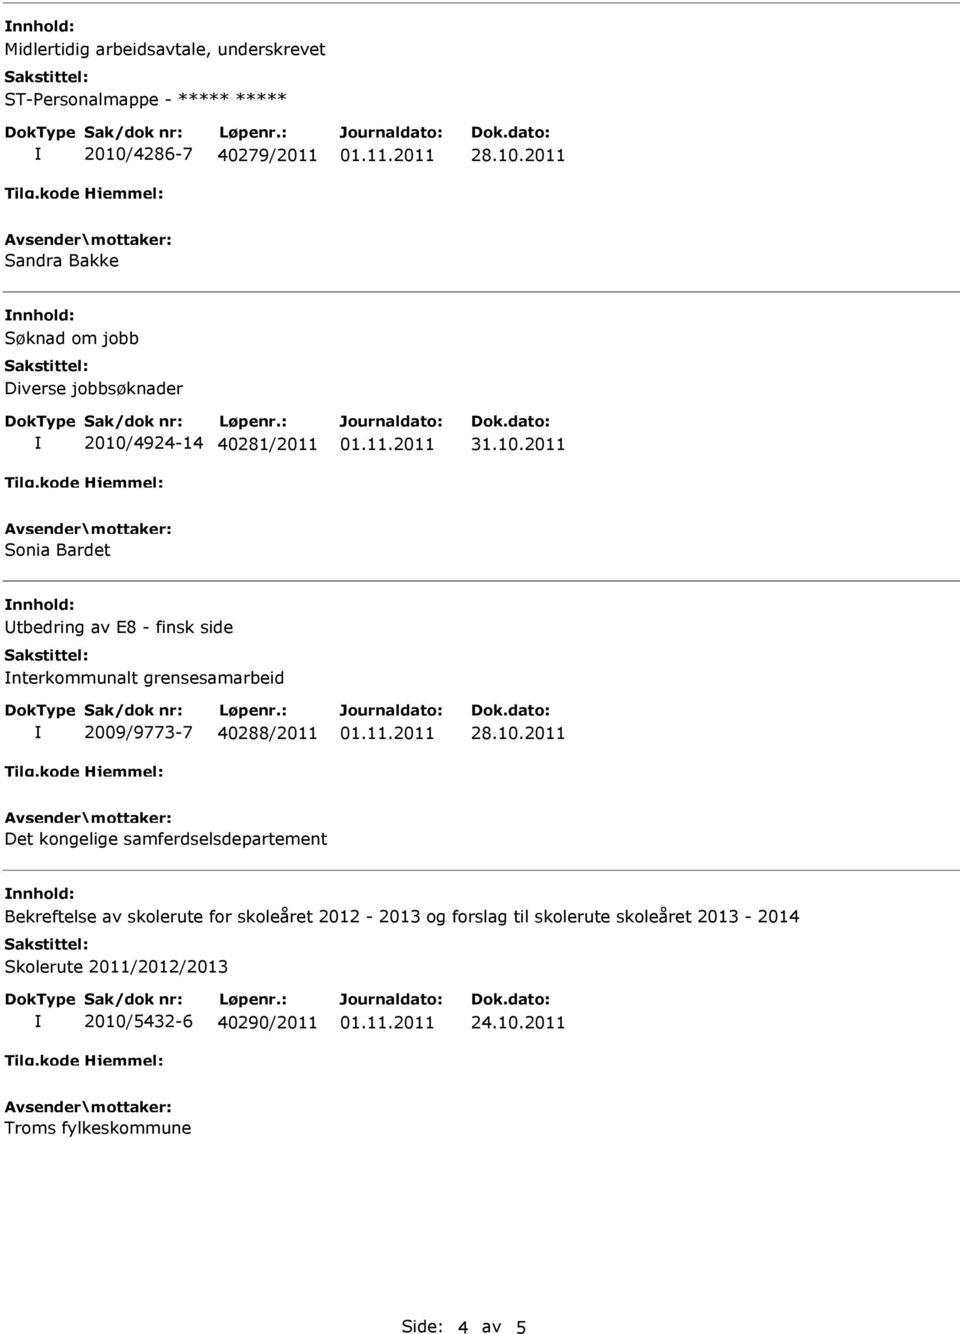 40288/2011 Det kongelige samferdselsdepartement Bekreftelse av skolerute for skoleåret 2012-2013 og forslag til